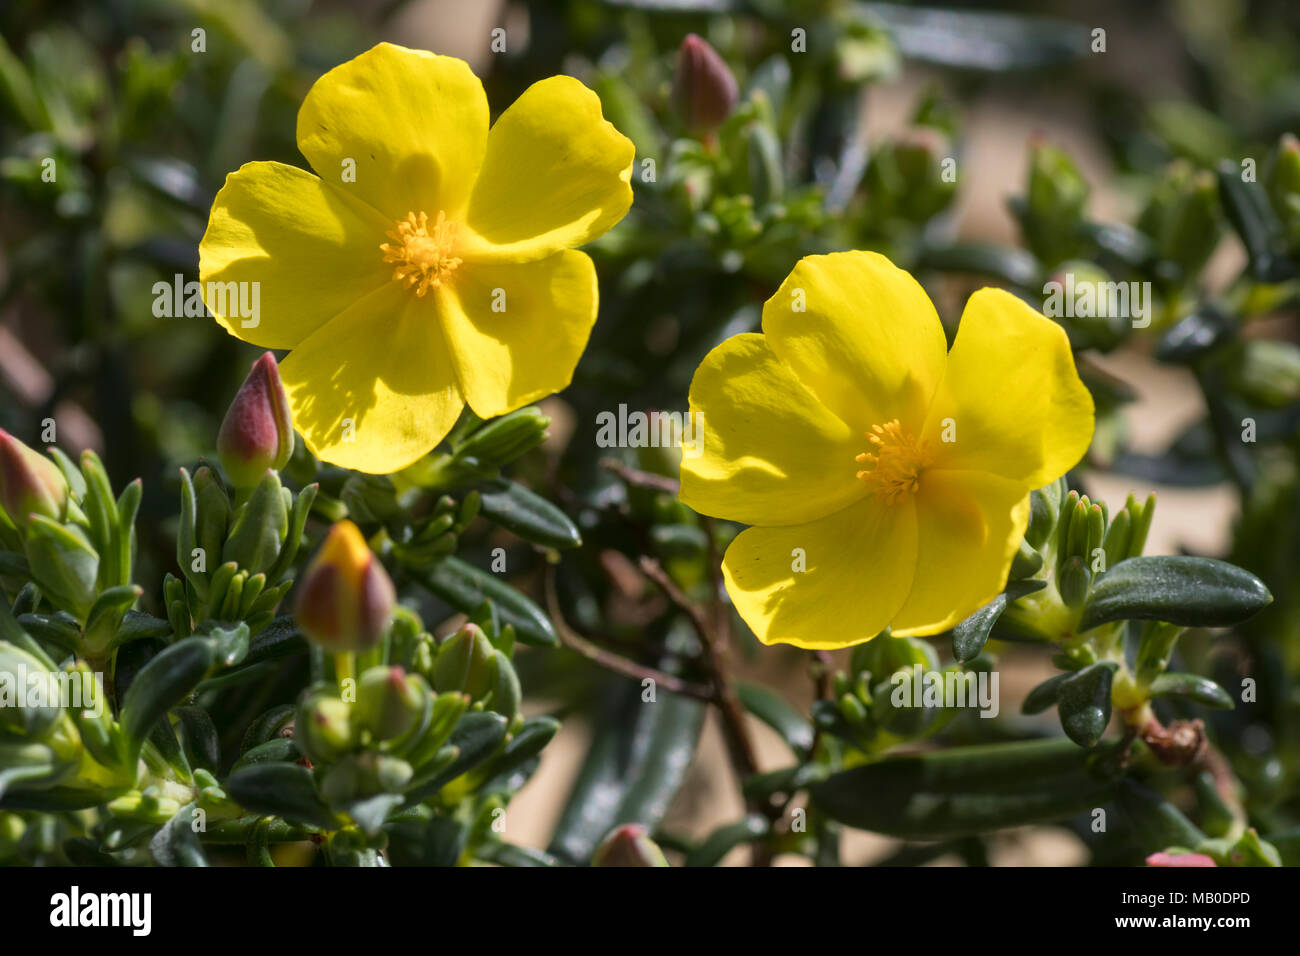 Fleurs jaunes de l'evergreen arbustif du soleil, Halimium calycinum, au printemps Banque D'Images